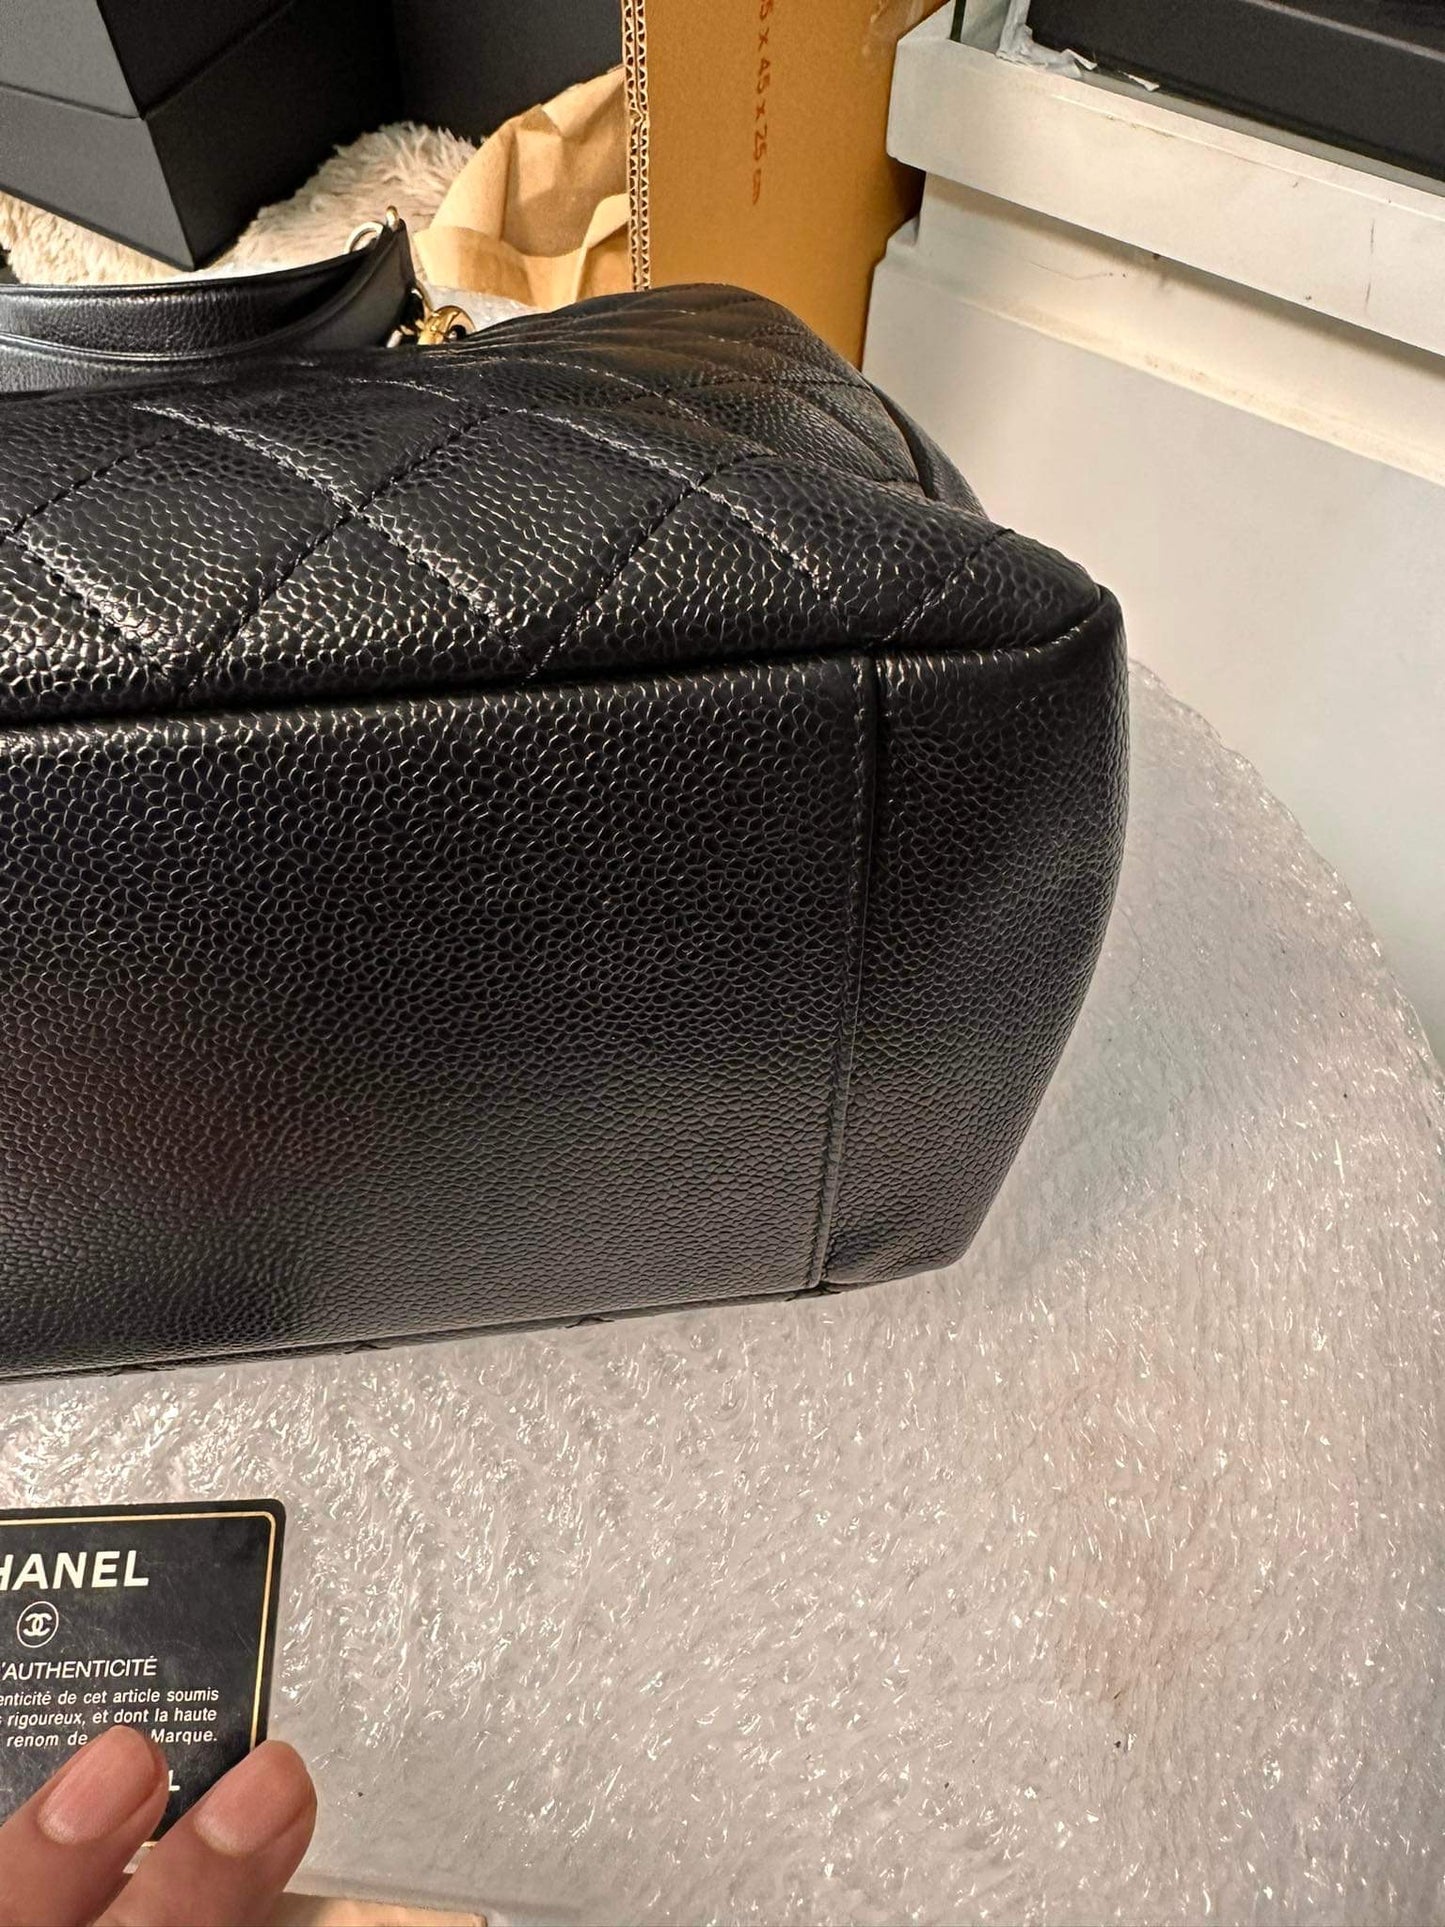 Chanel grand shopper tote black caviar gold hardware